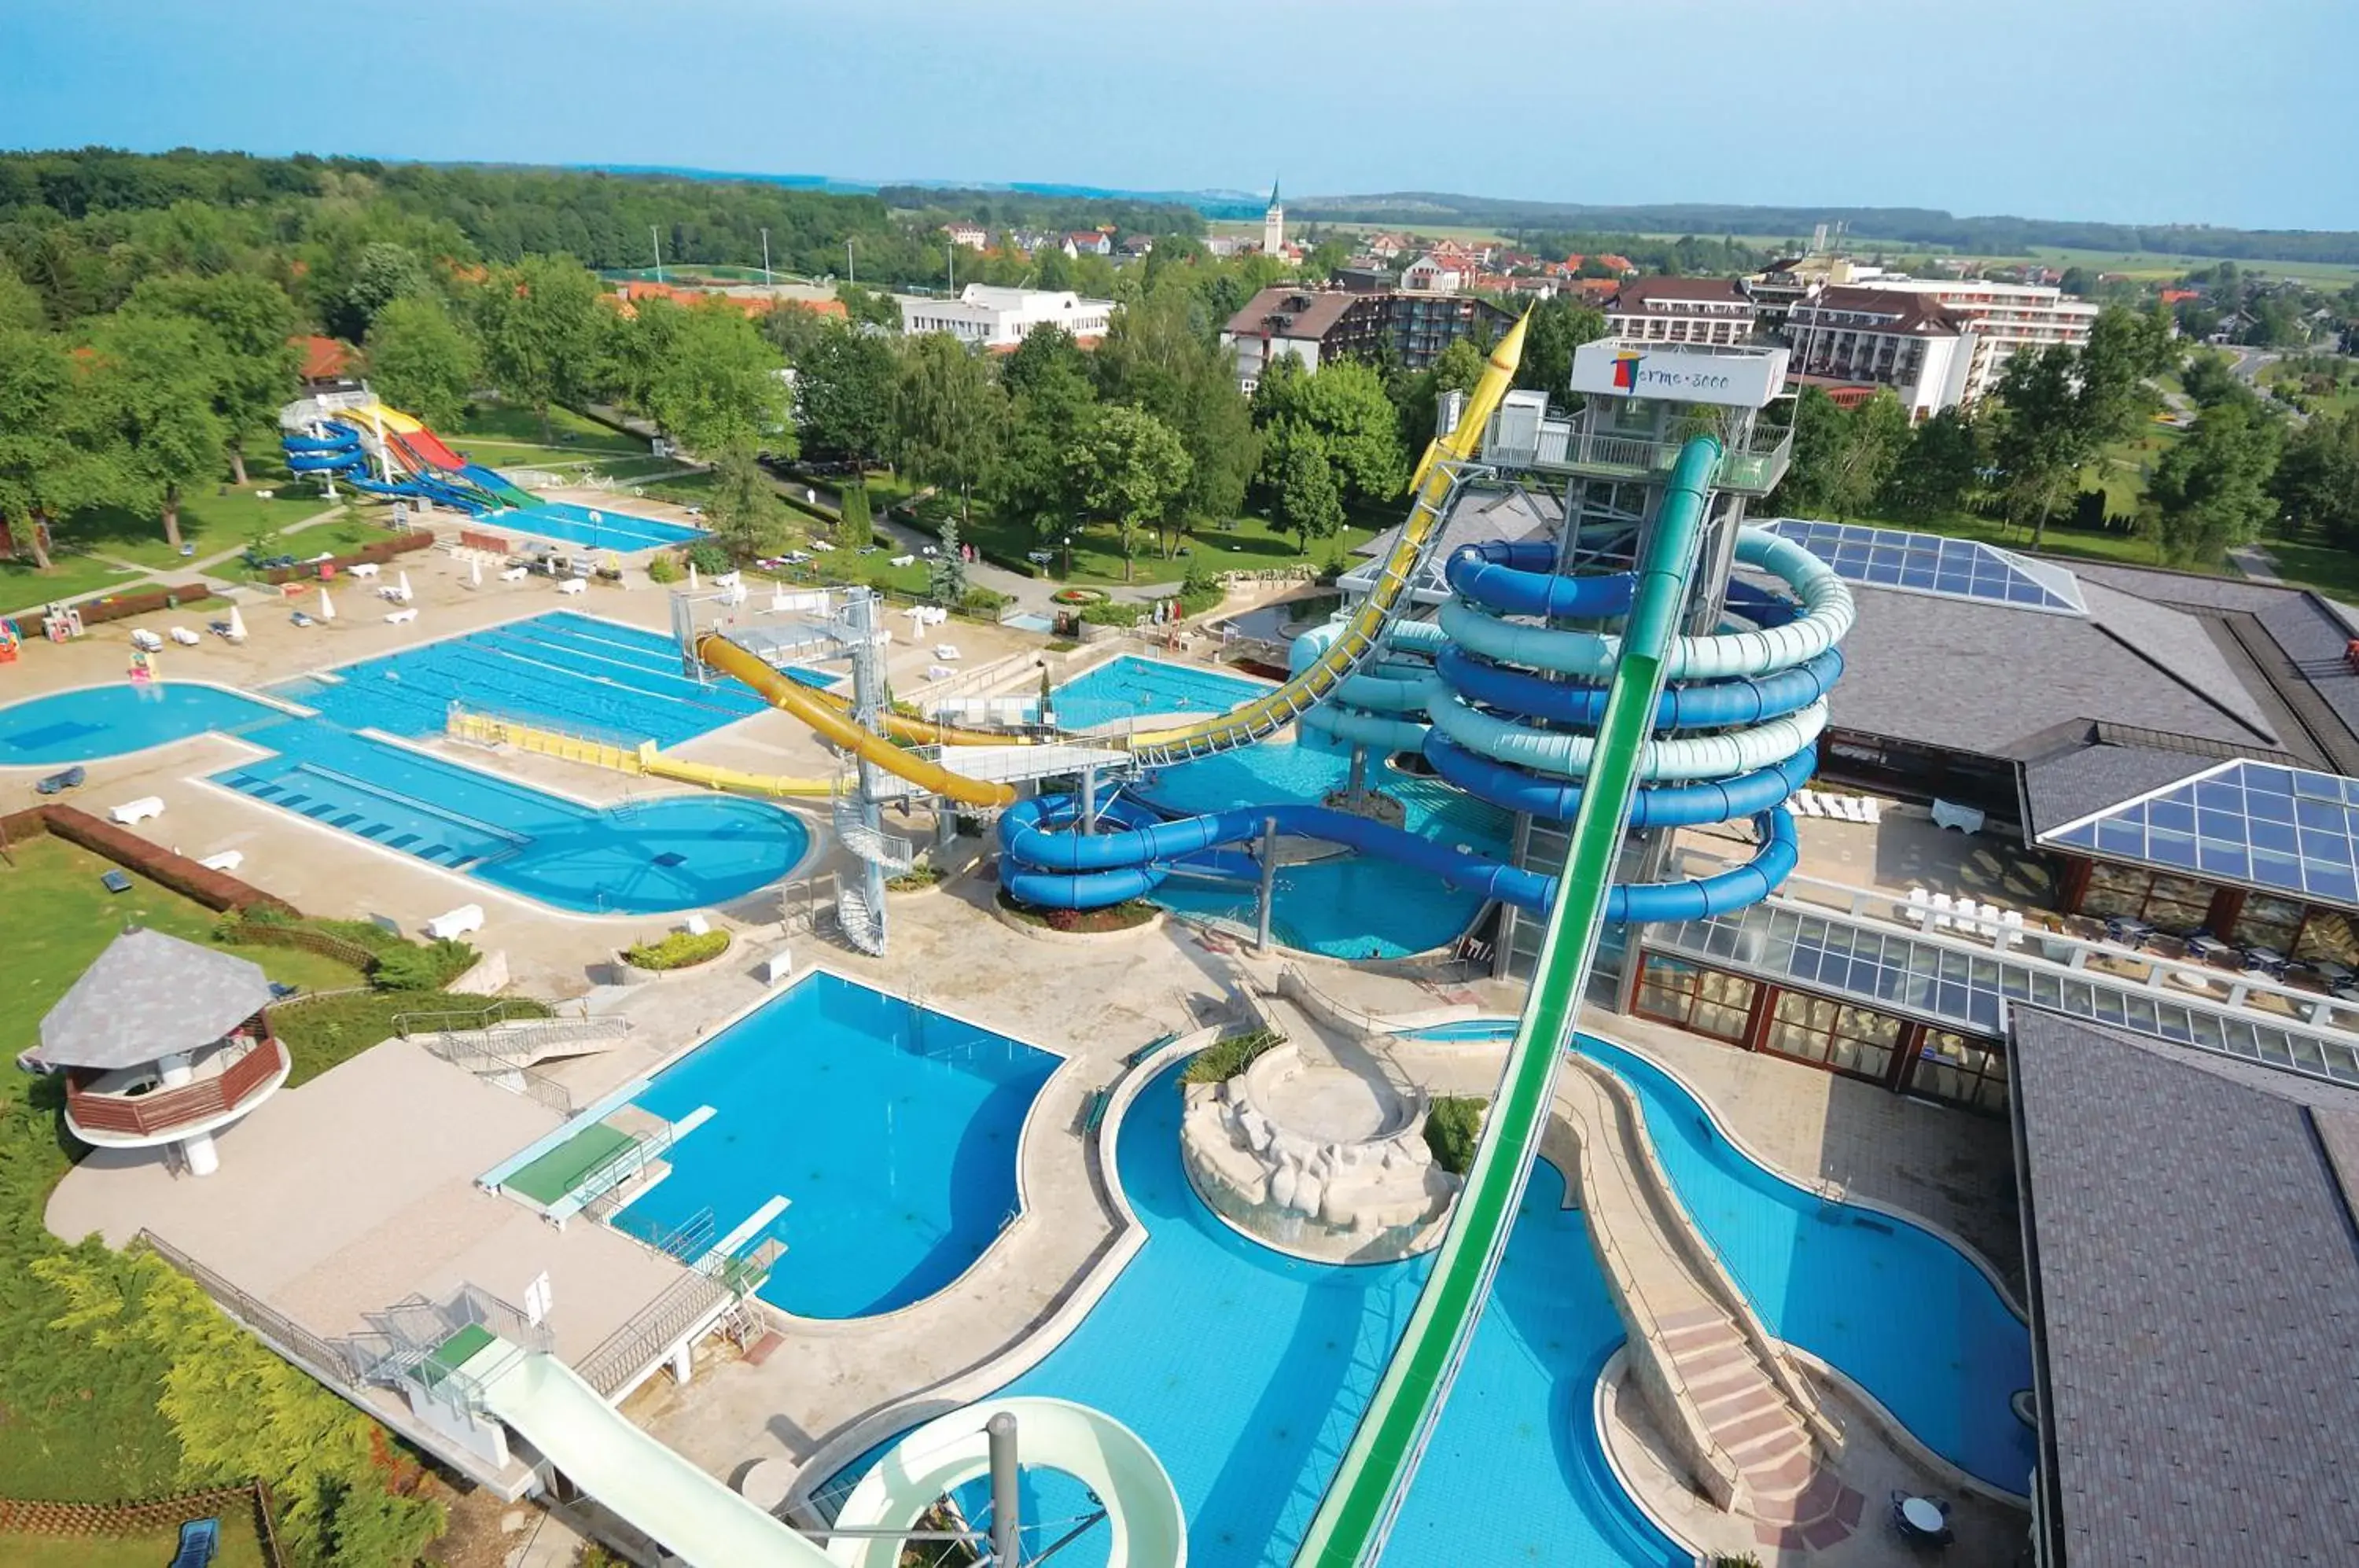 Aqua park, Pool View in Hotel Termal - Terme 3000 - Sava Hotels & Resorts